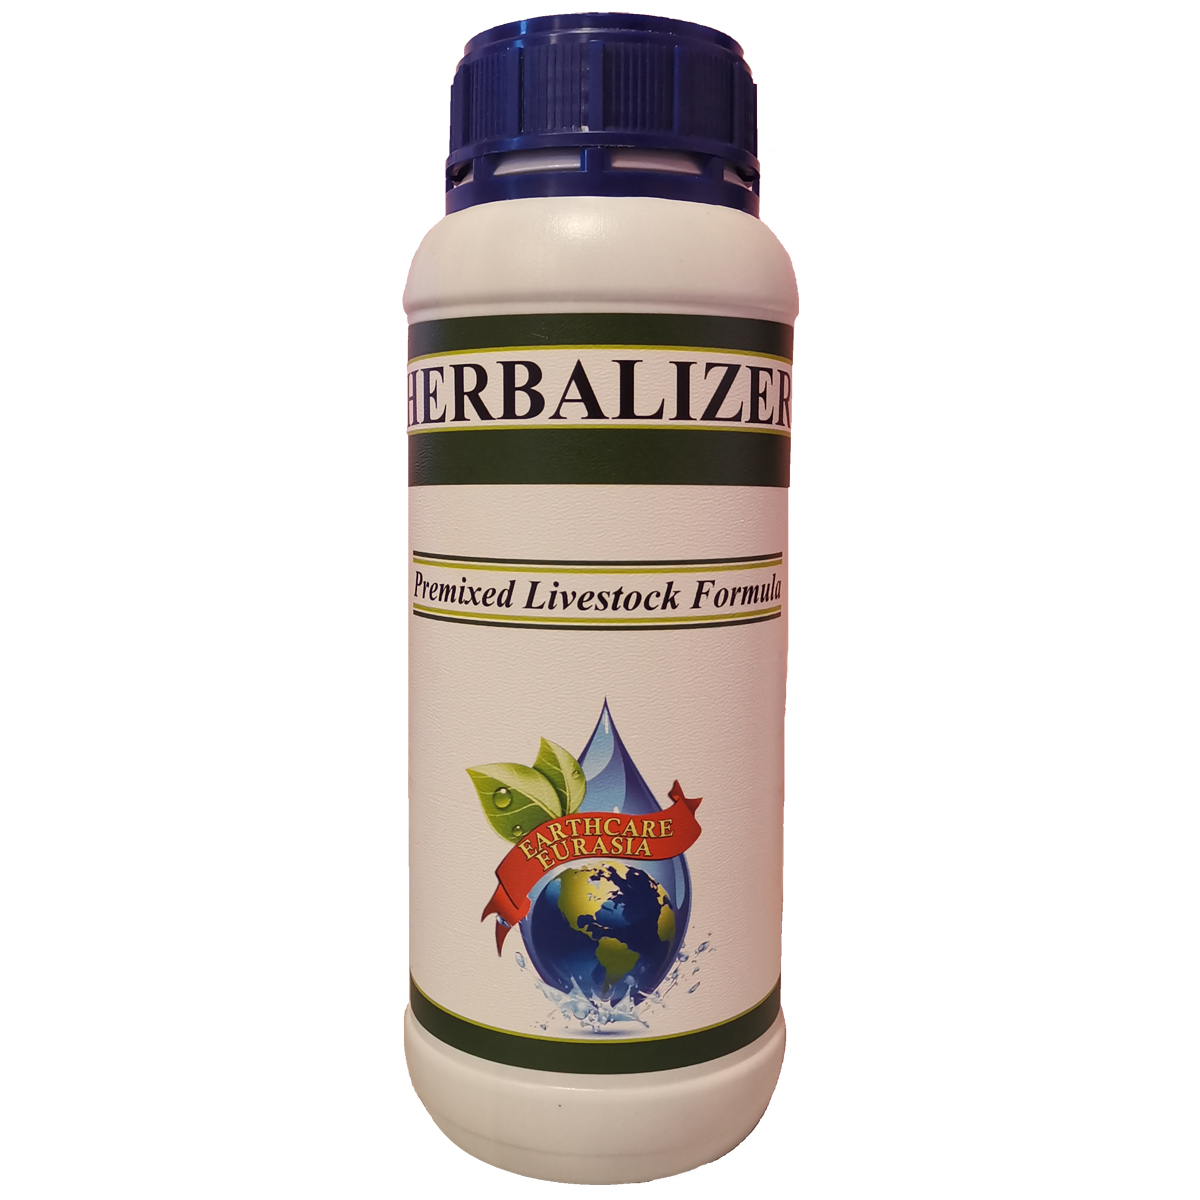 Herbalizer Livestock Formula (1 Lt)